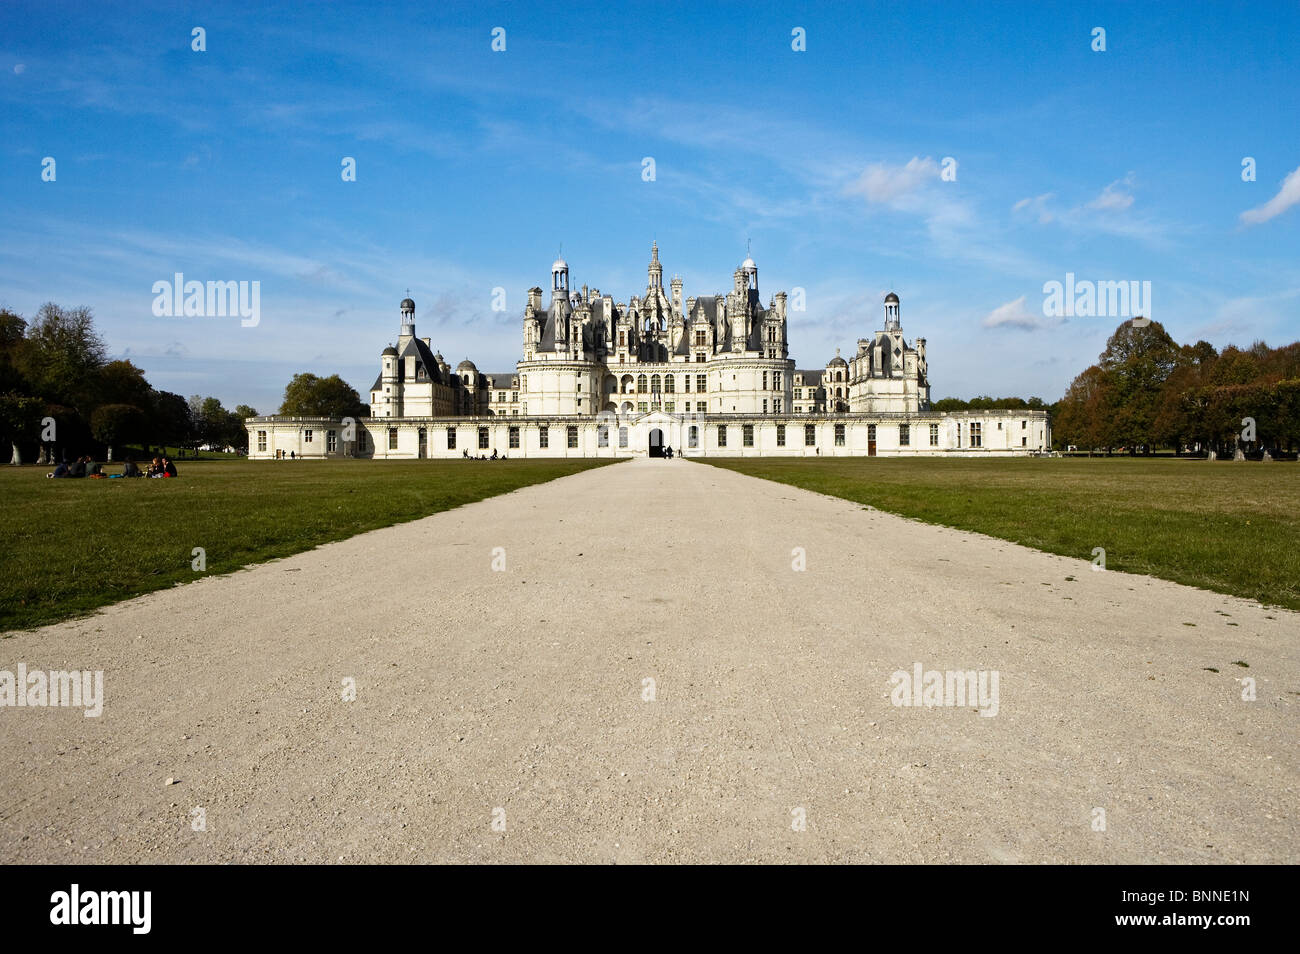 Chateau de Chambord, Loire, France Stock Photo